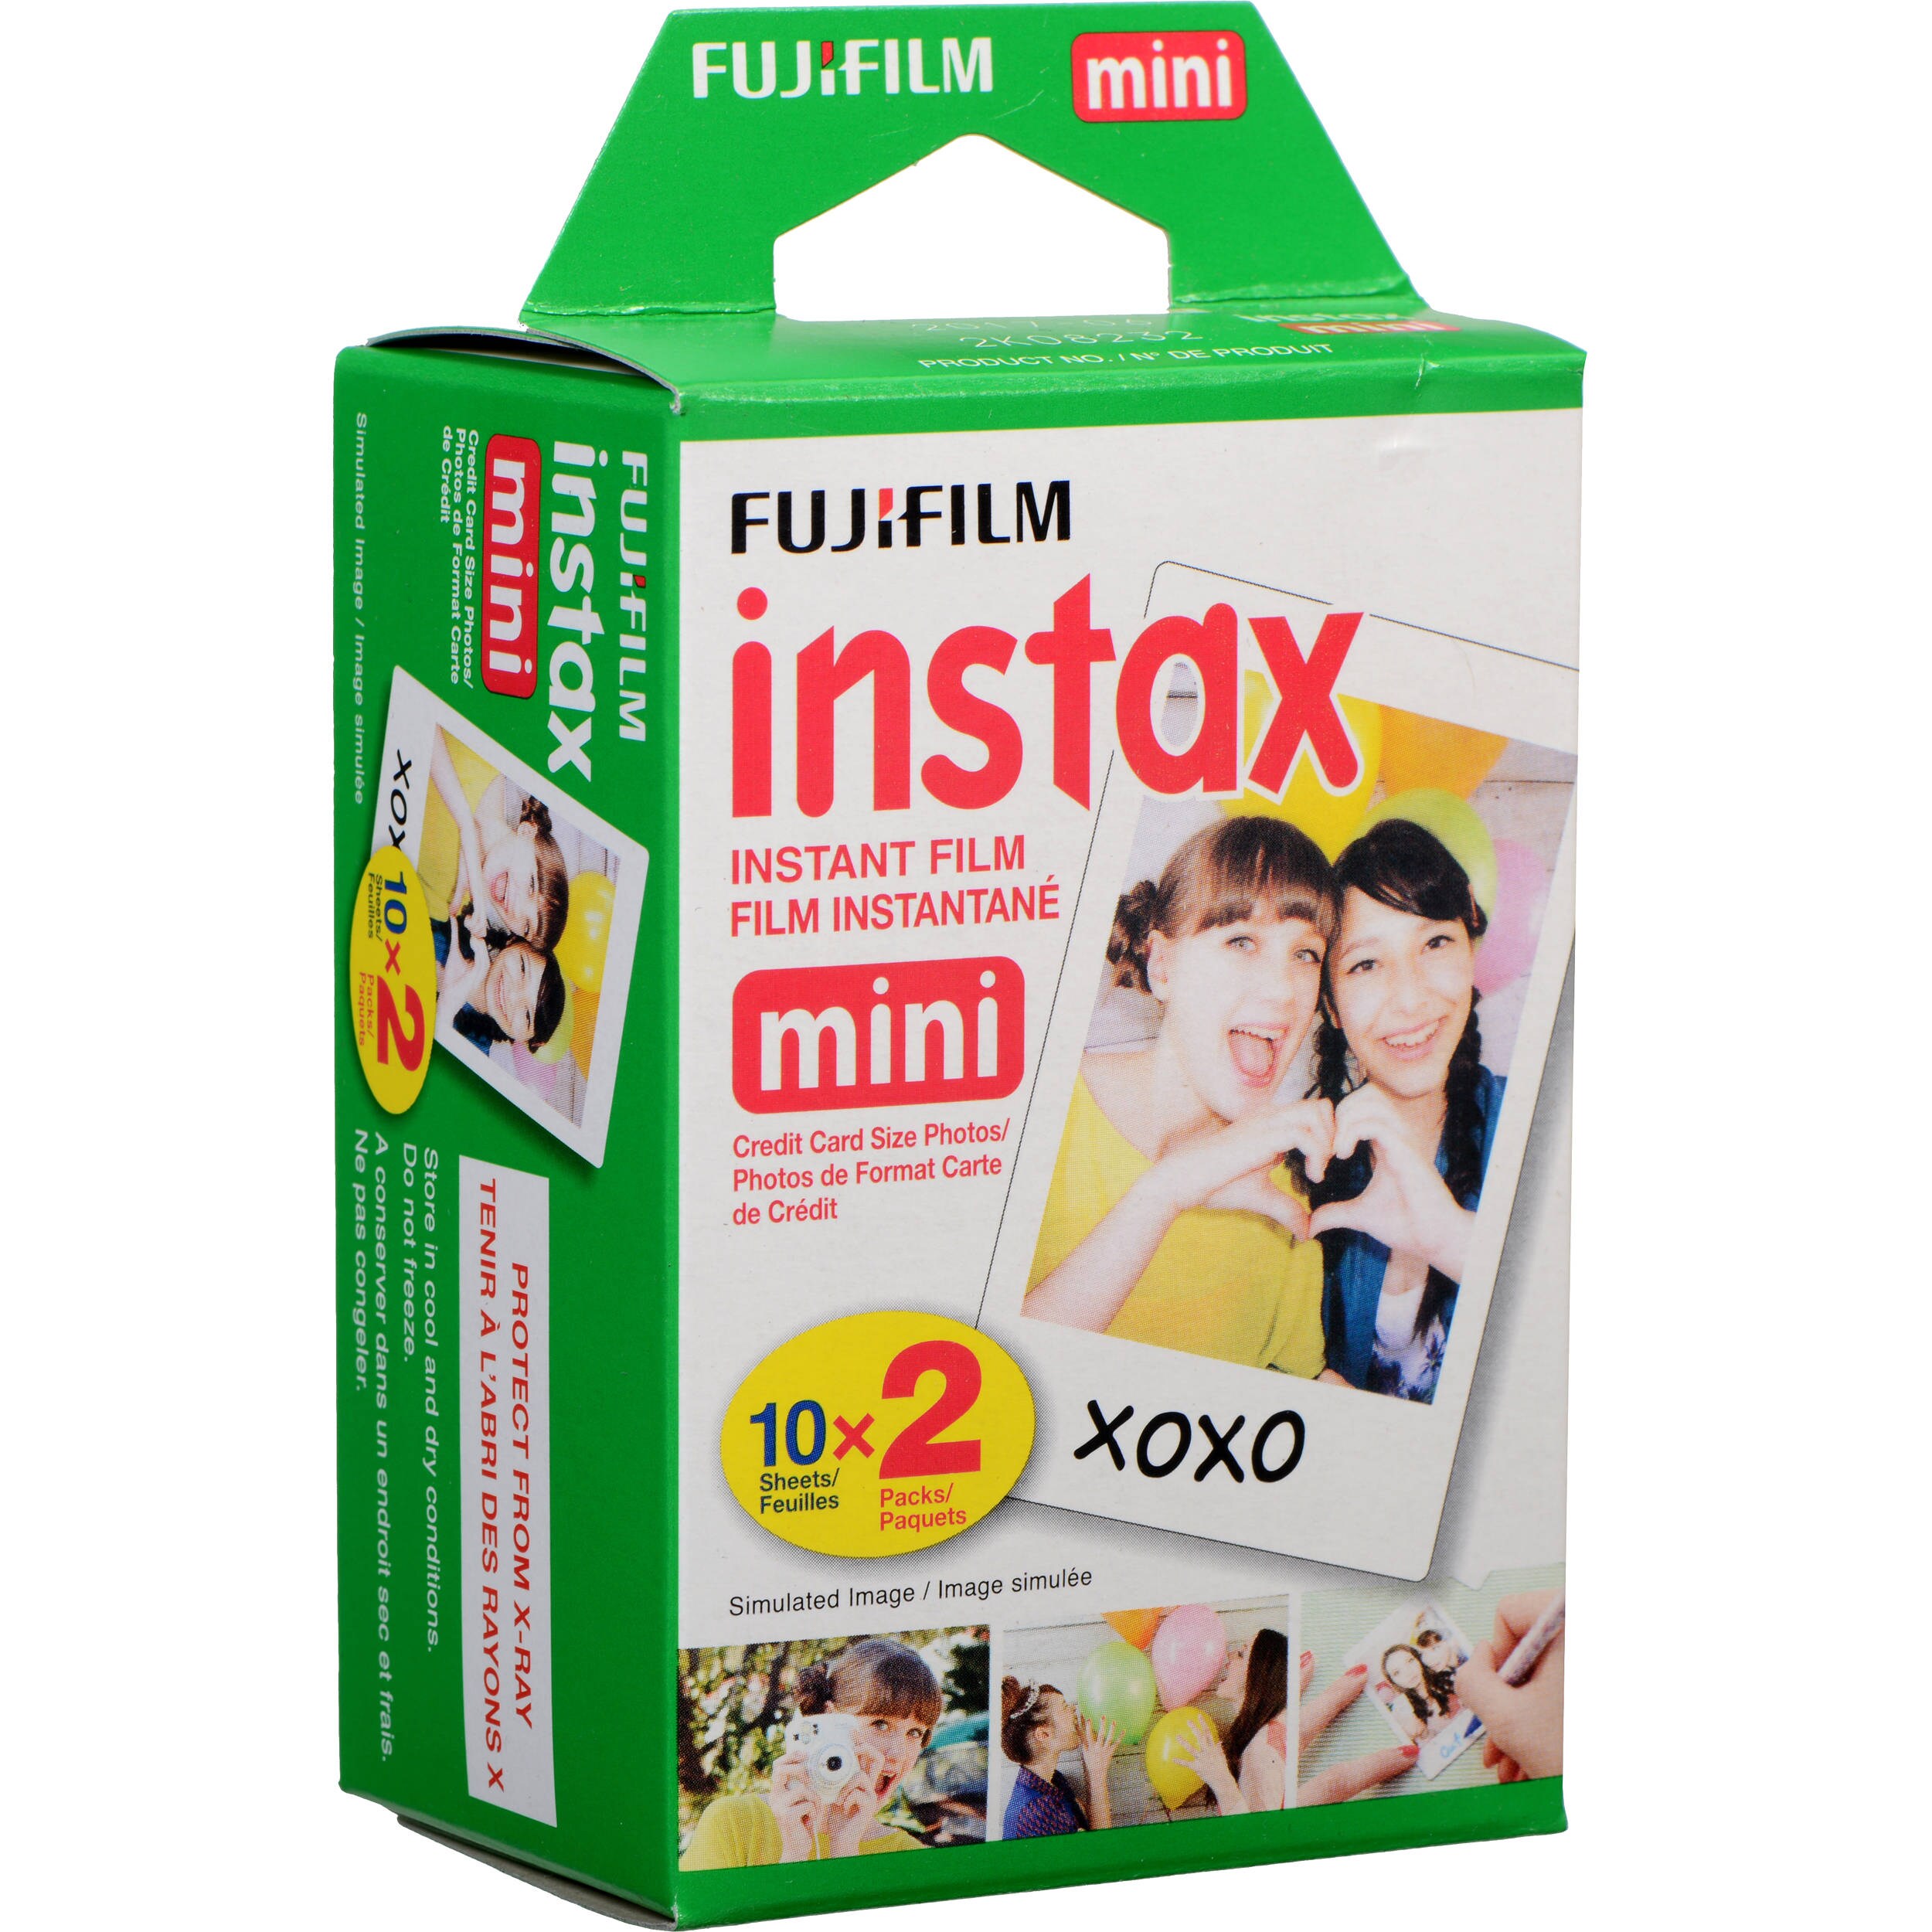 Fujifilm INSTAX MINI 10x2 bilder